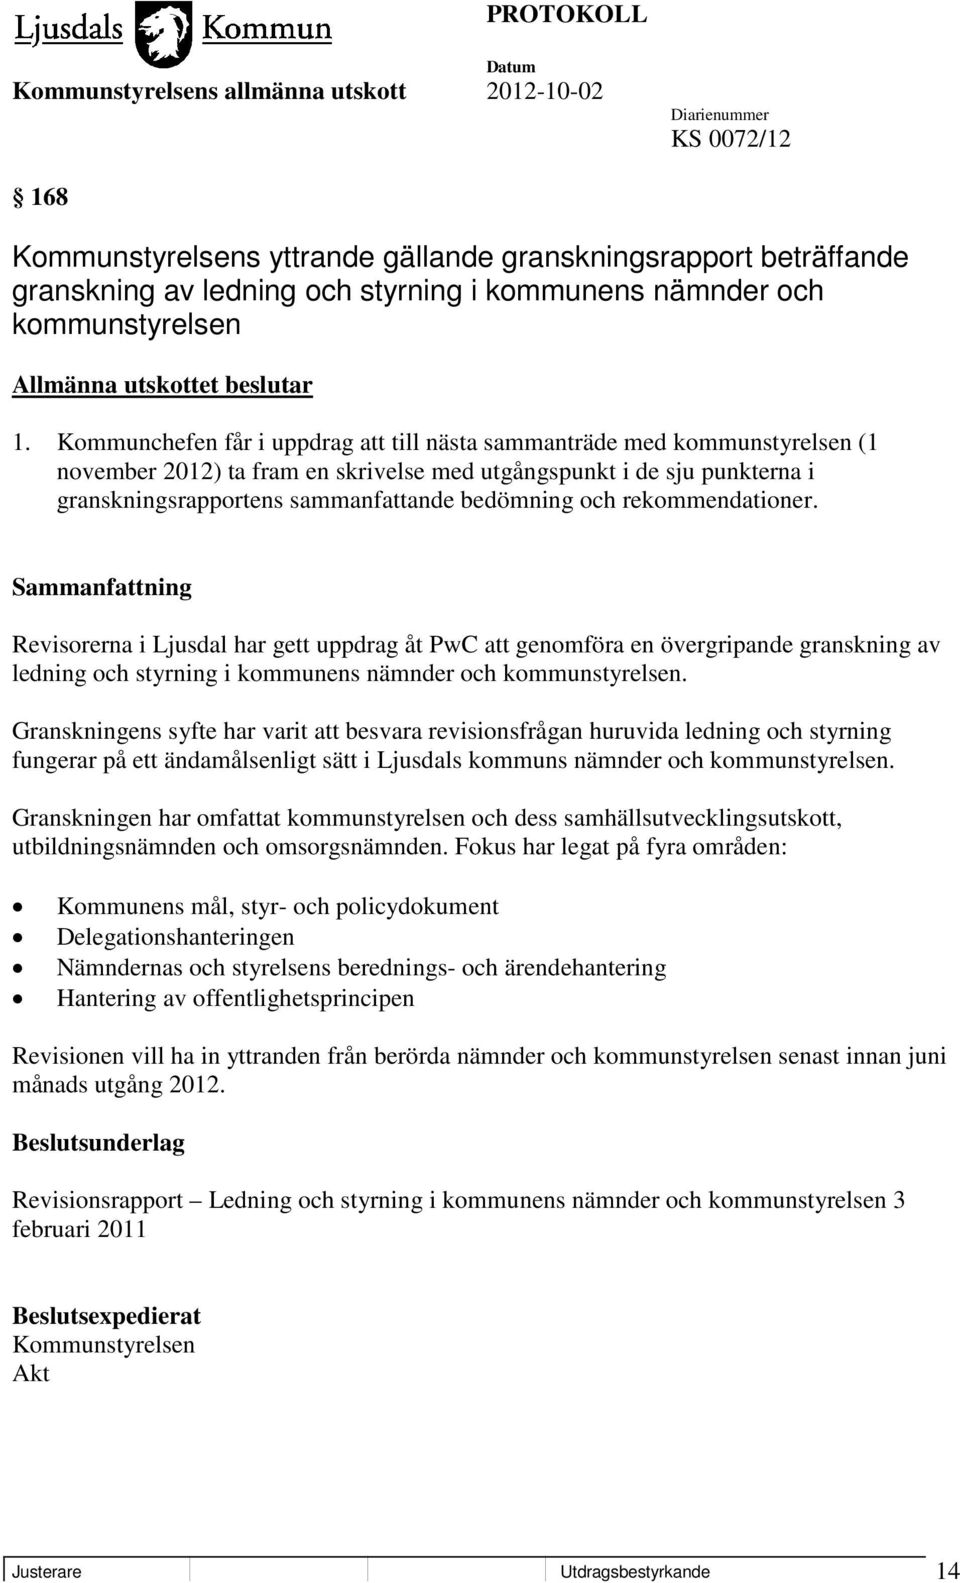 och rekommendationer. Revisorerna i Ljusdal har gett uppdrag åt PwC att genomföra en övergripande granskning av ledning och styrning i kommunens nämnder och kommunstyrelsen.